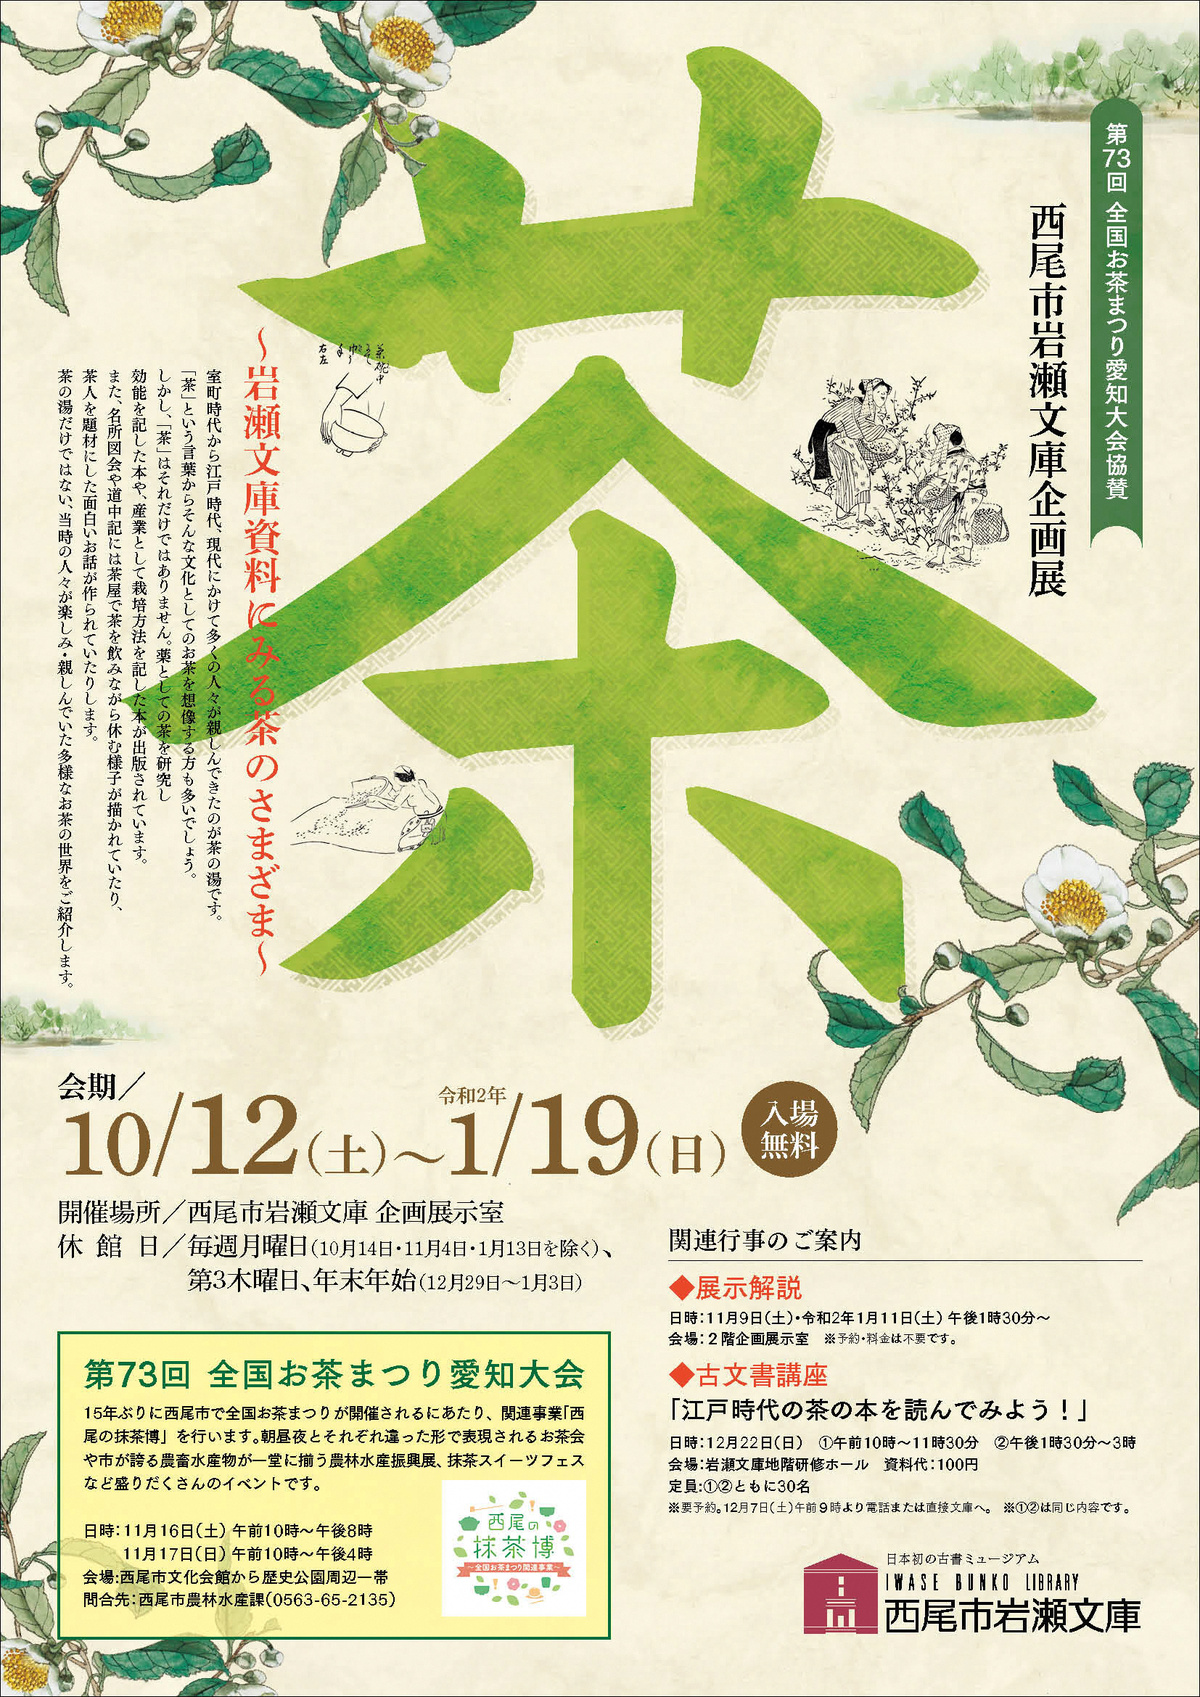 茶 ～岩瀬文庫資料にみる茶のさまざま～ | 企画展示 | 古書の博物館 